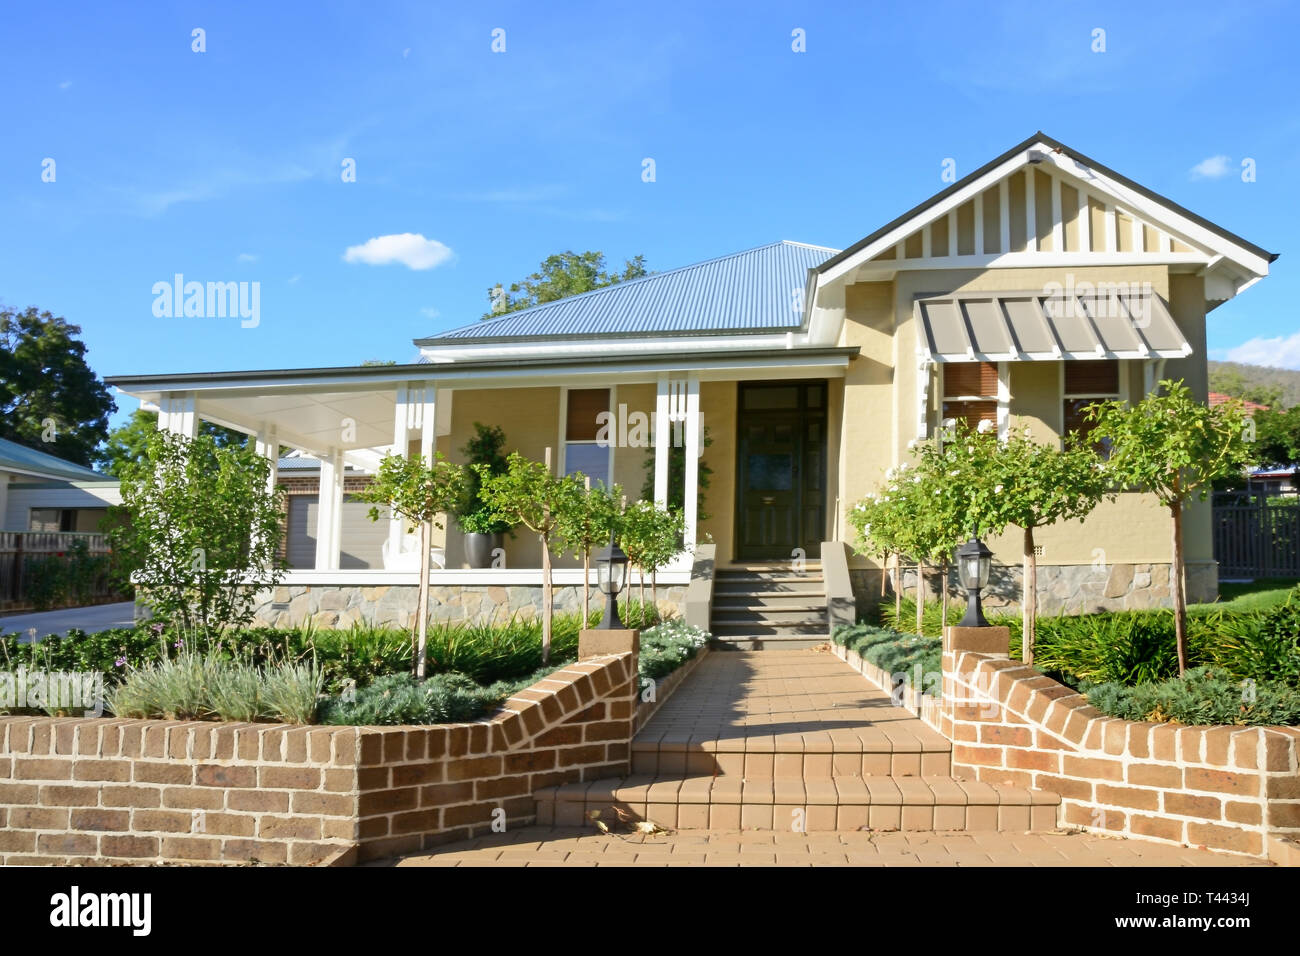 La fin de banlieue australienne Russie Style Home. Tamworth NSW Australie. Banque D'Images